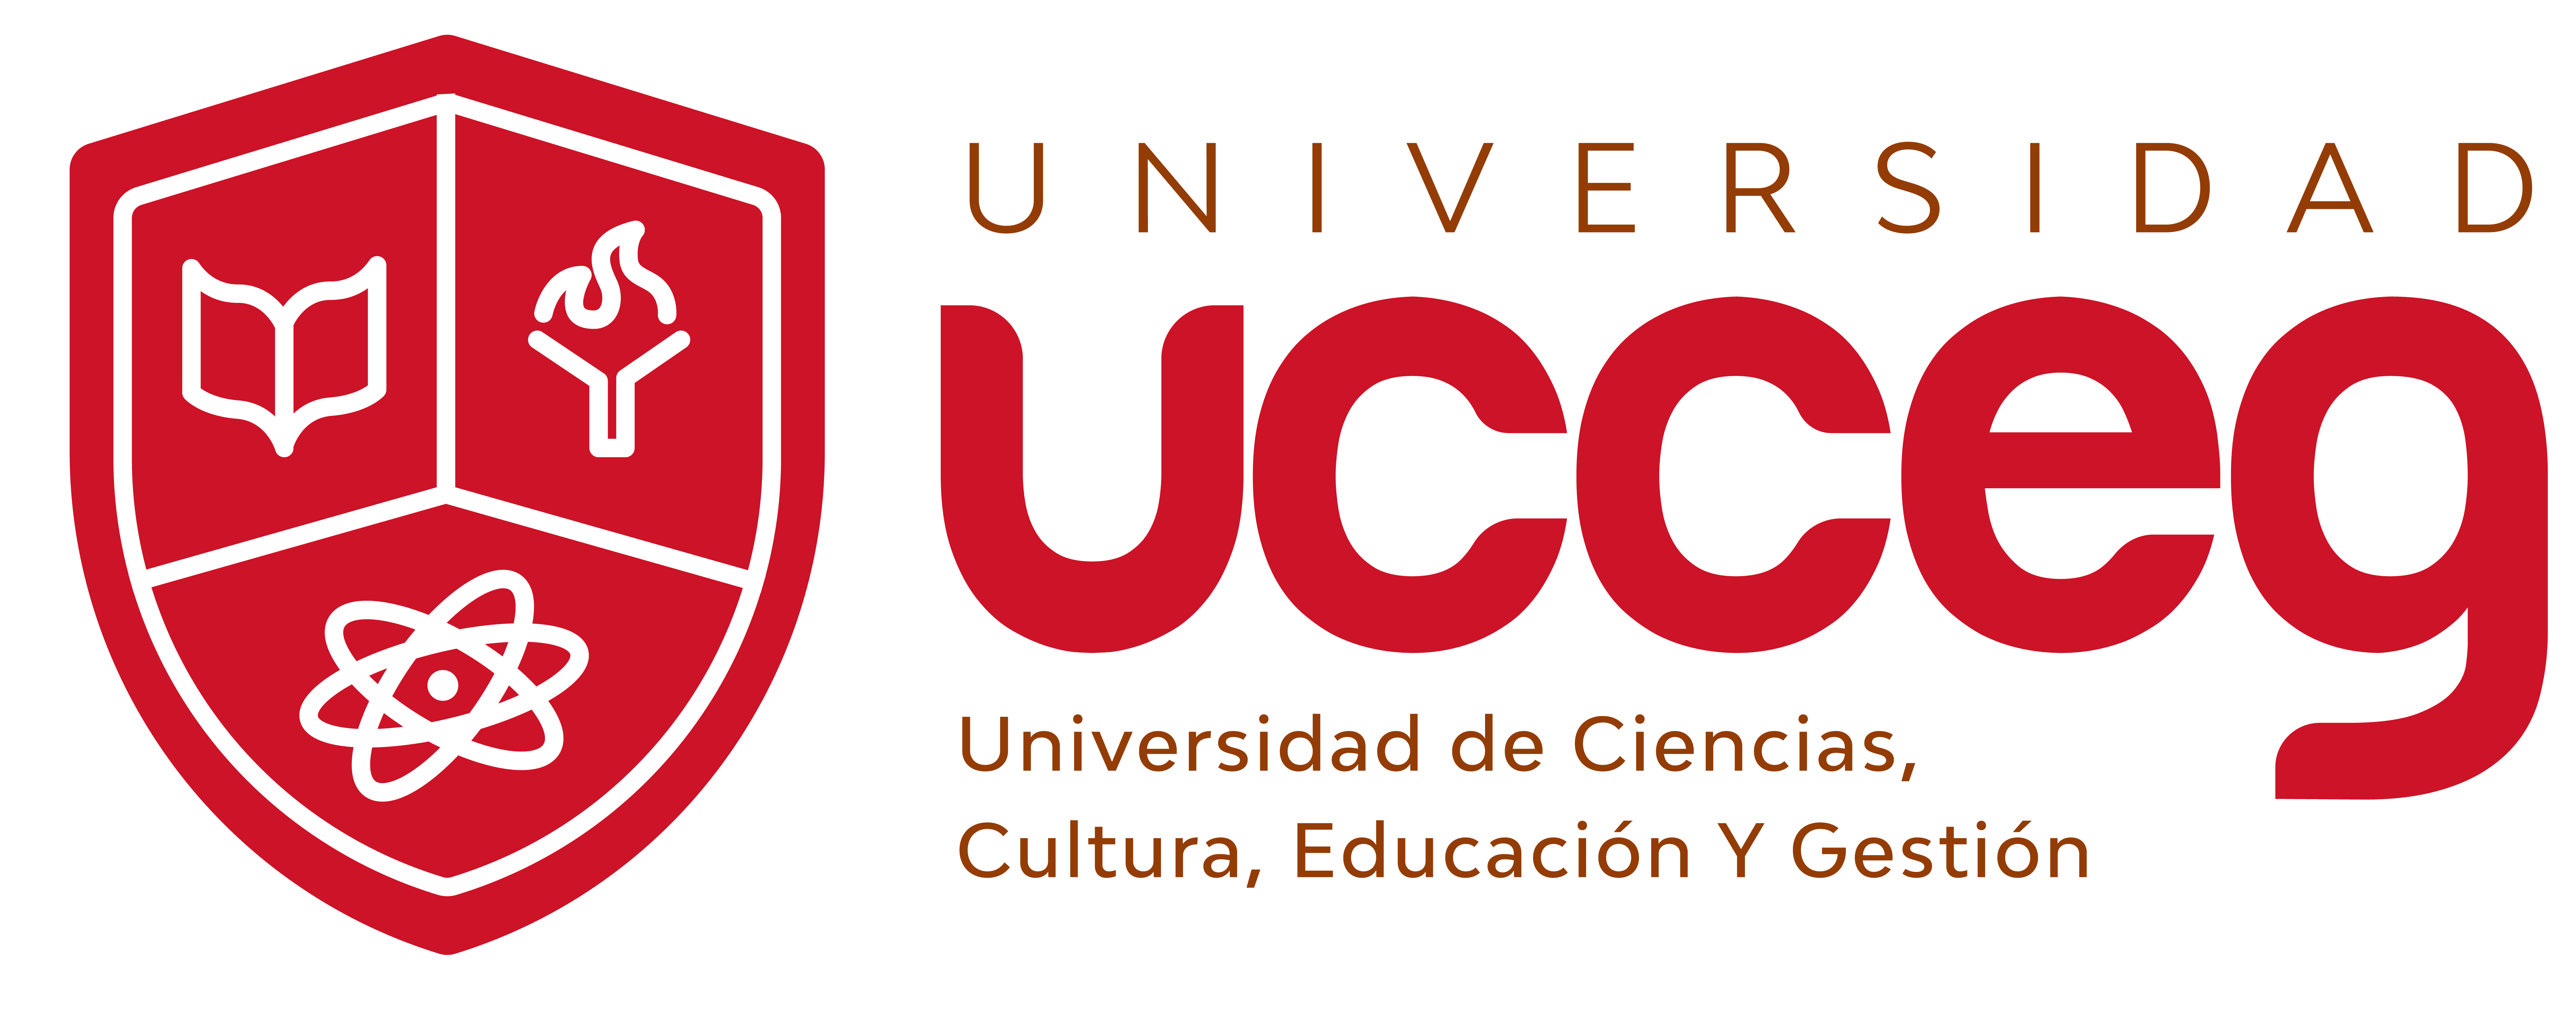 Instituto de Estudios Universitarios UCCEG